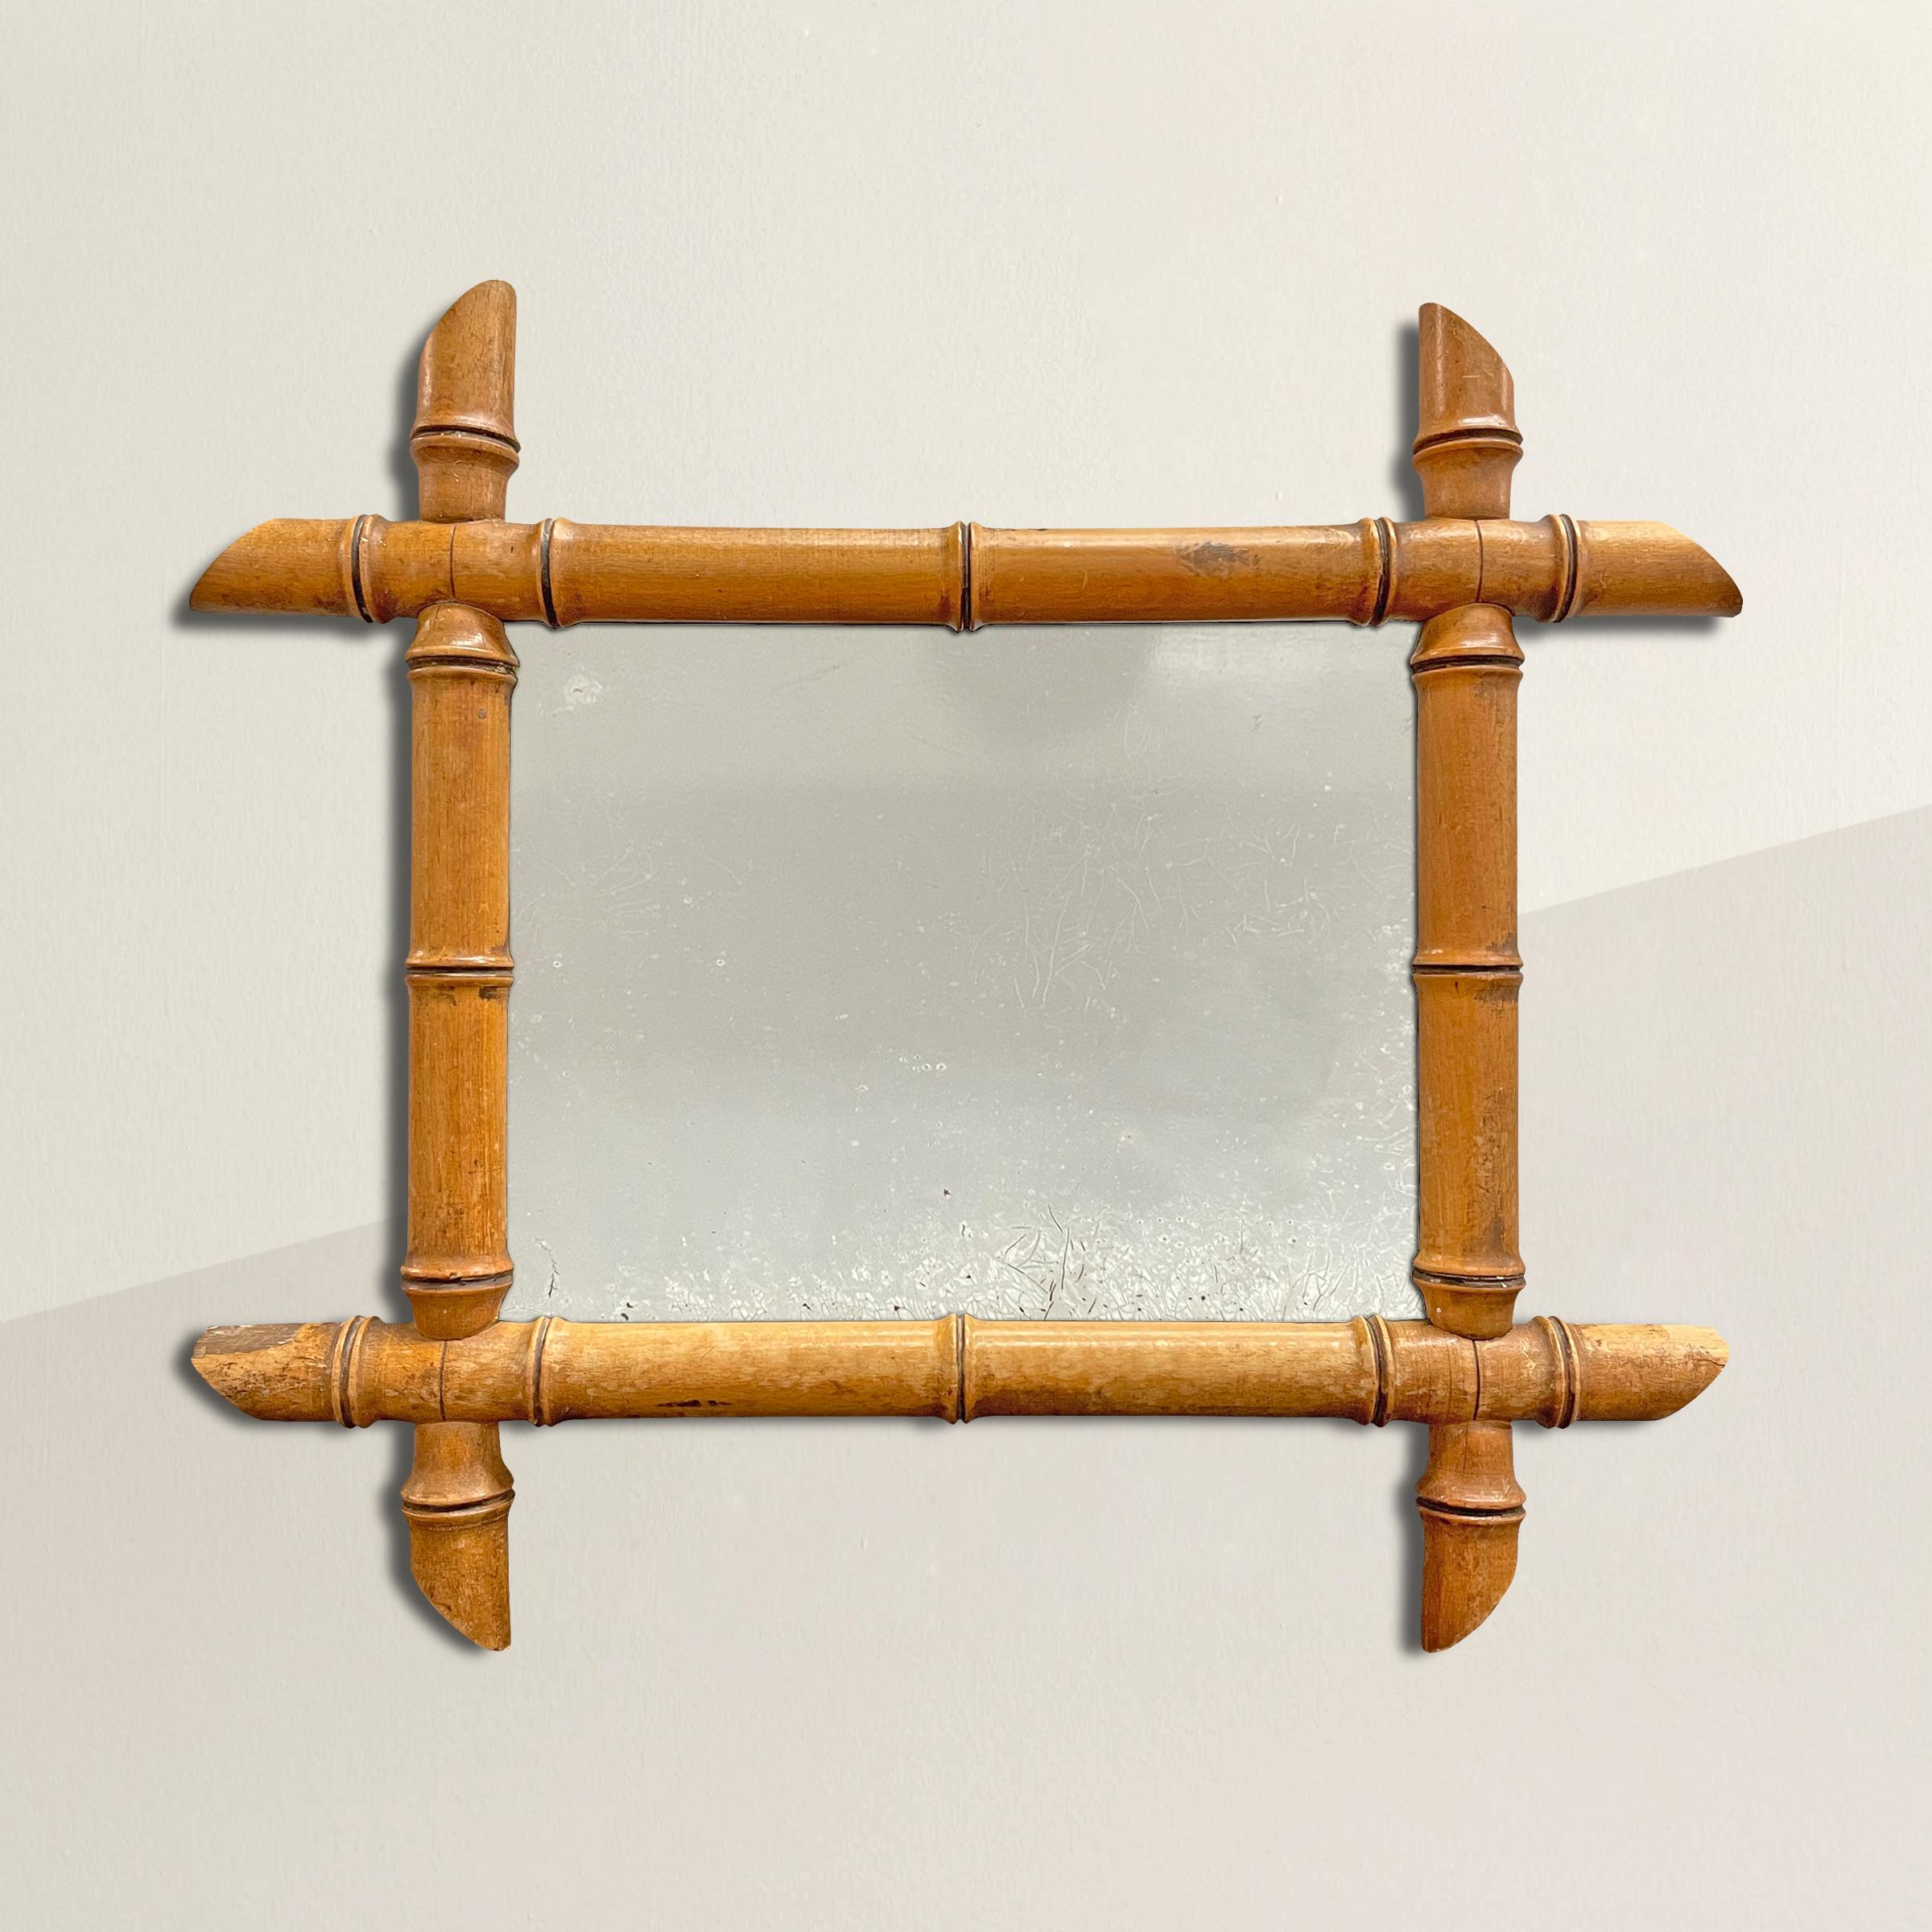 Un charmant miroir à cadre en érable français du début du 20e siècle, sculpté pour imiter le bambou. Le miroir parfait pour une petite salle de bain, une chambre d'amis ou tout autre endroit où vous avez besoin d'un peu d'éclat.